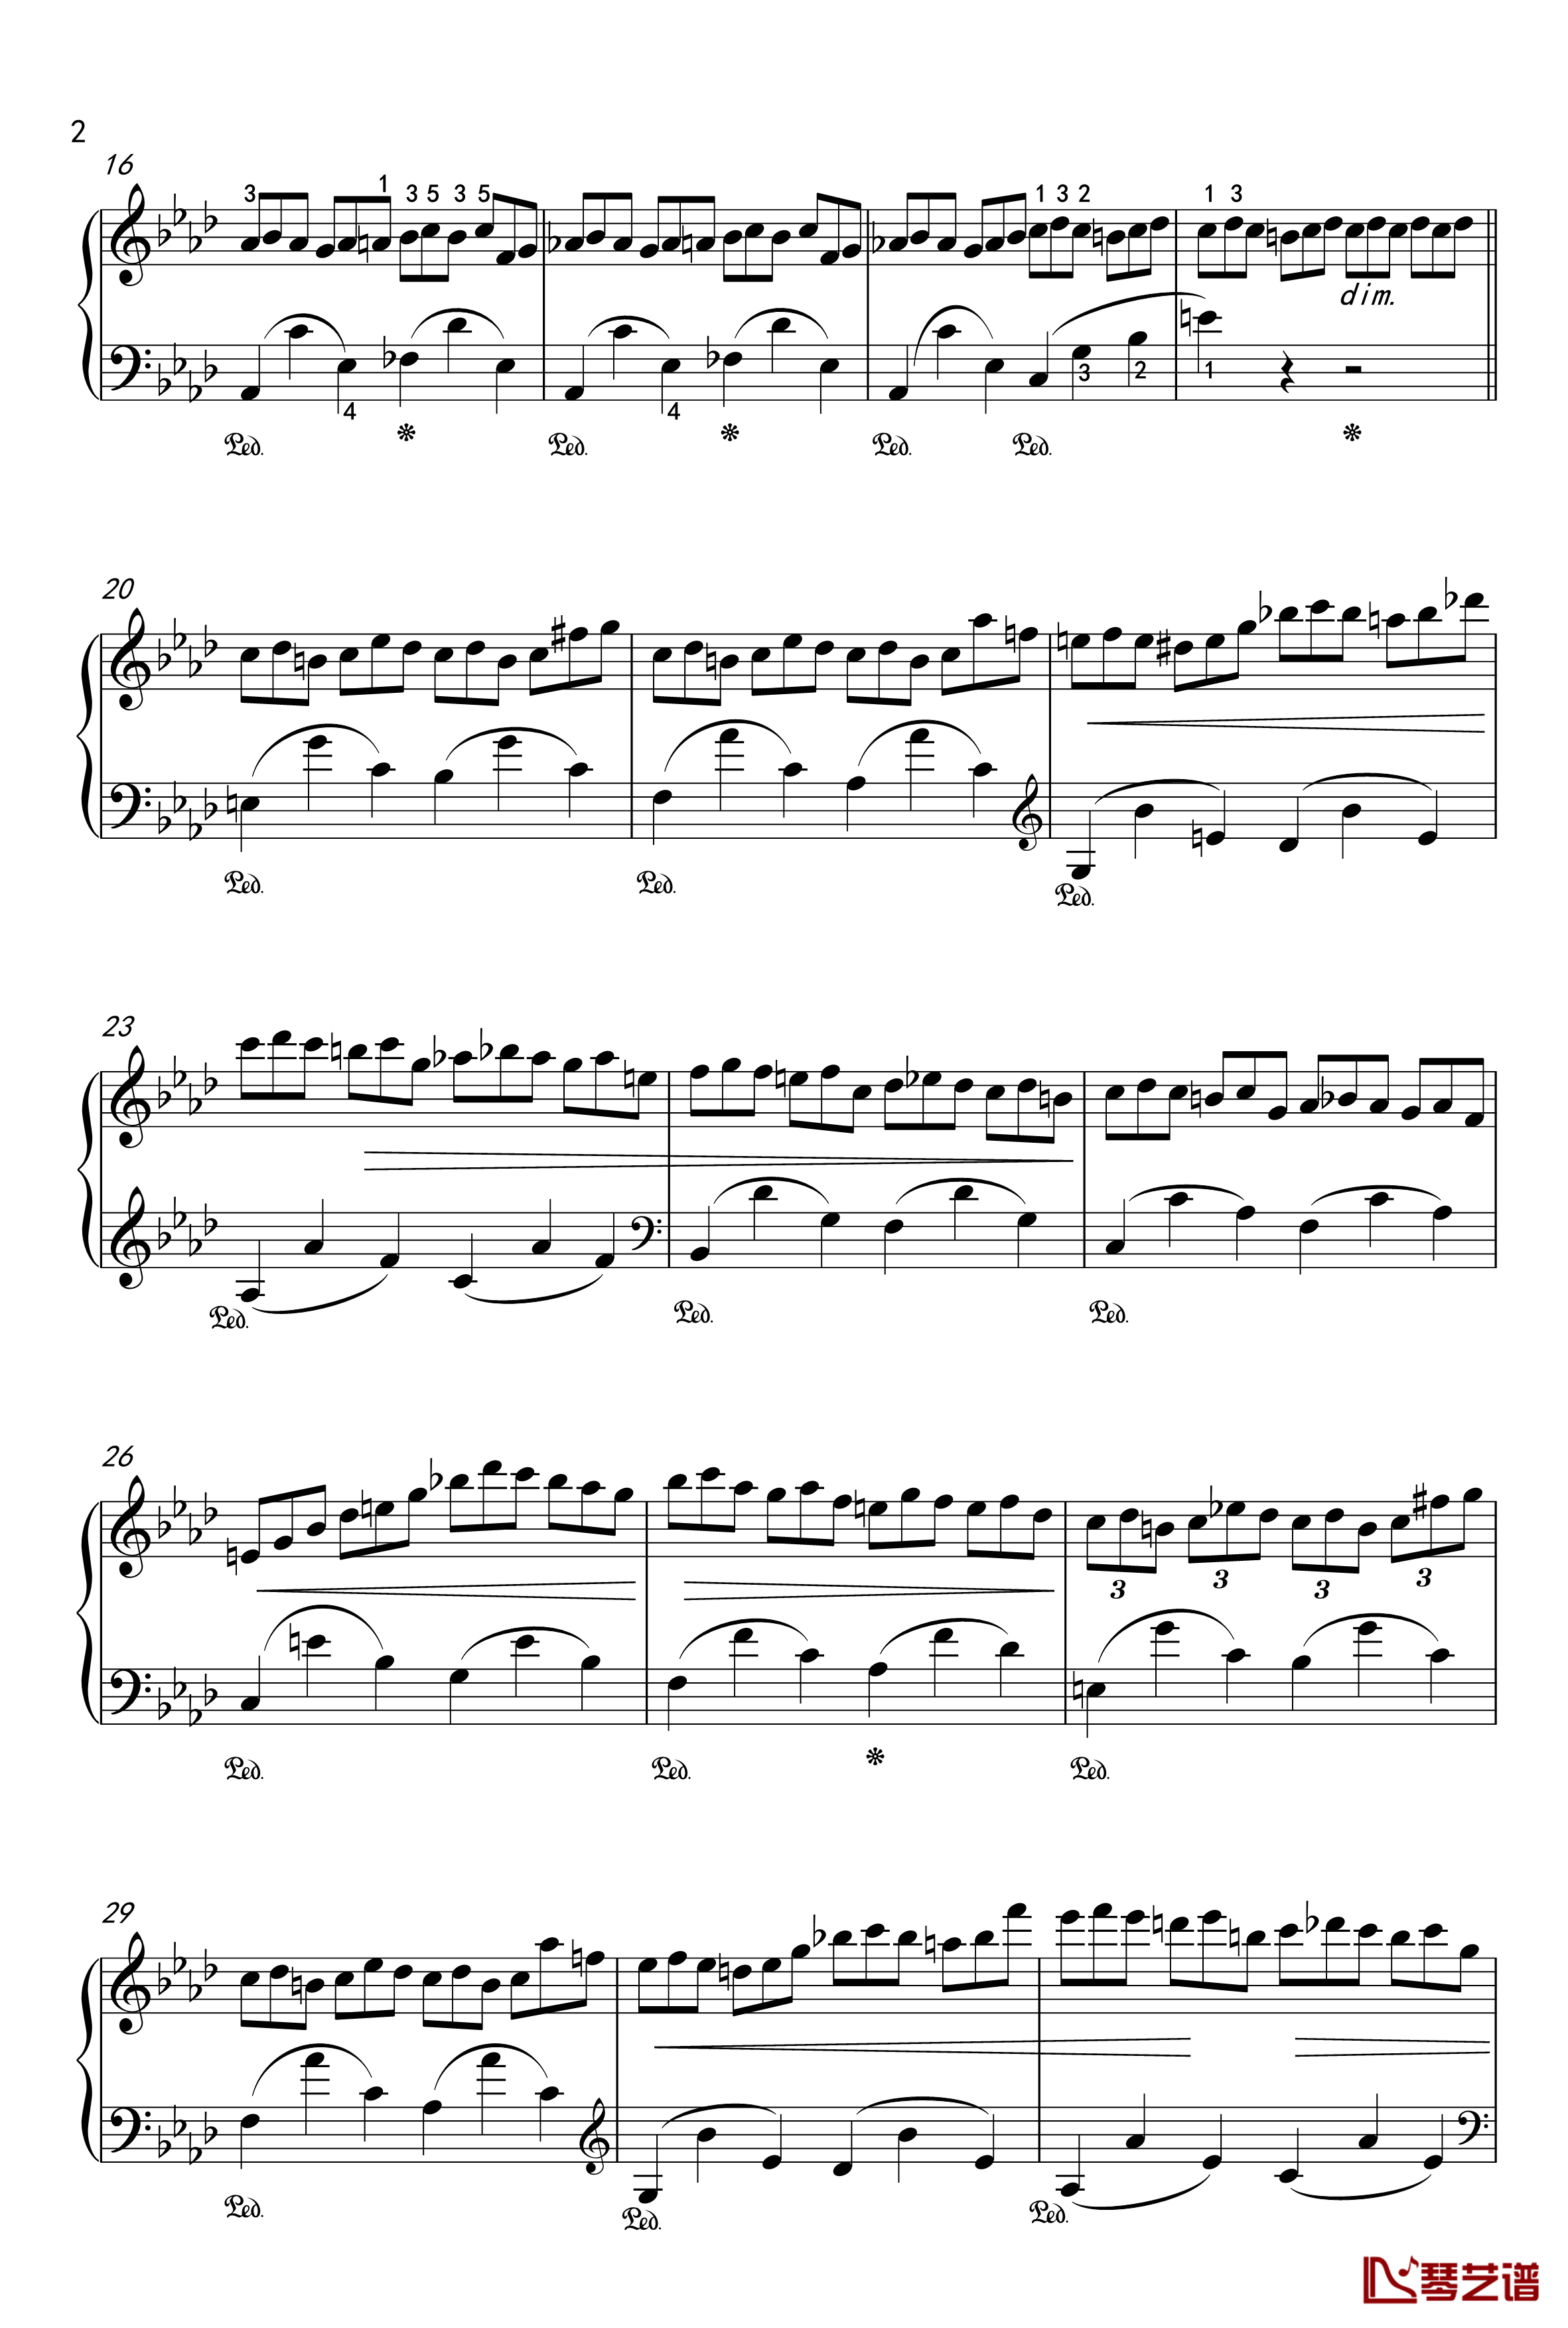 练习曲钢琴谱-OP-25-2-肖邦-chopin2